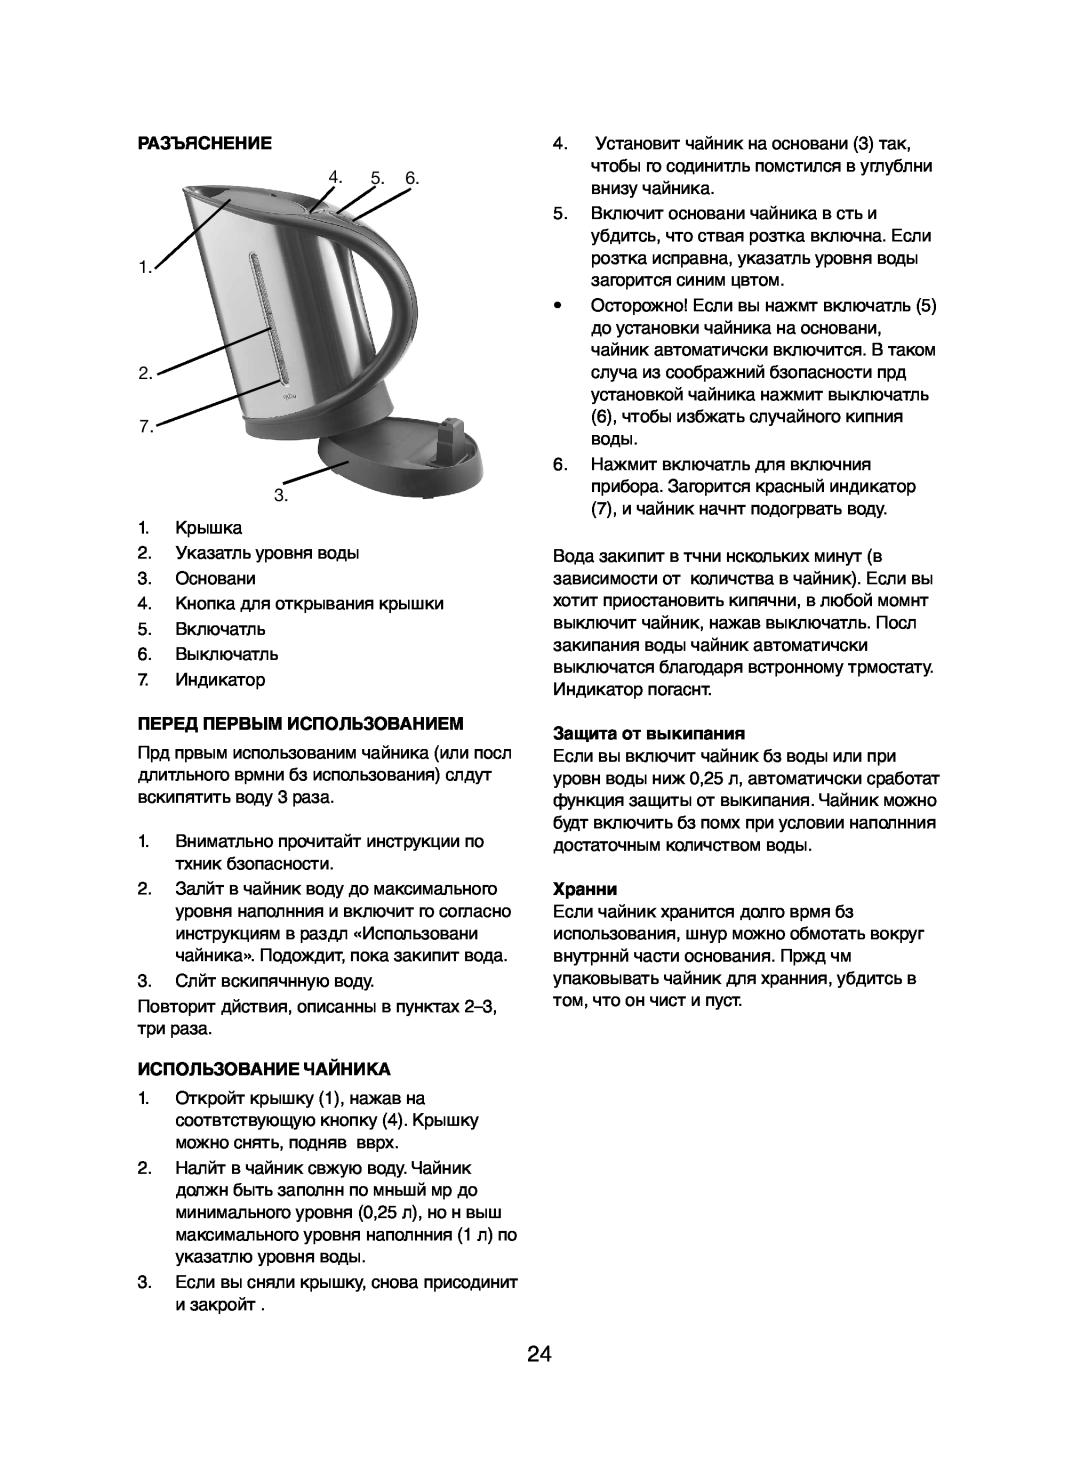 Melissa 245-031 manual Разъяснение, Перед Первым Использованием, Использование Чайника, Защита от выкипания, Хранни 